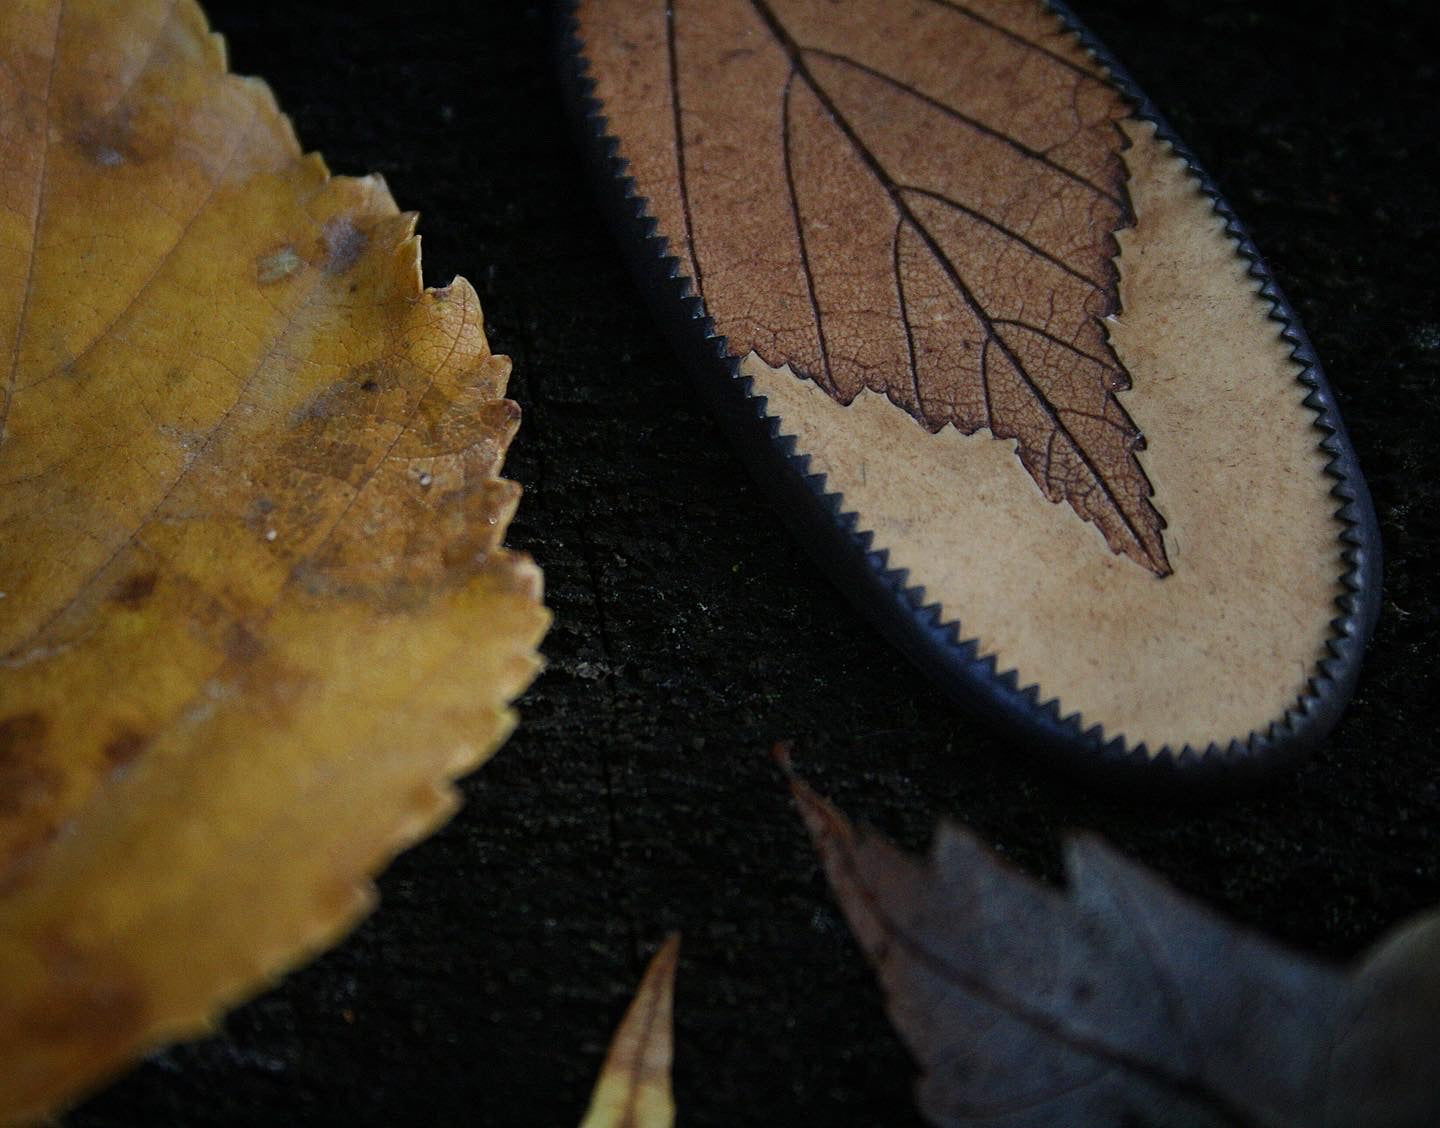 Birch Leaf Earrings